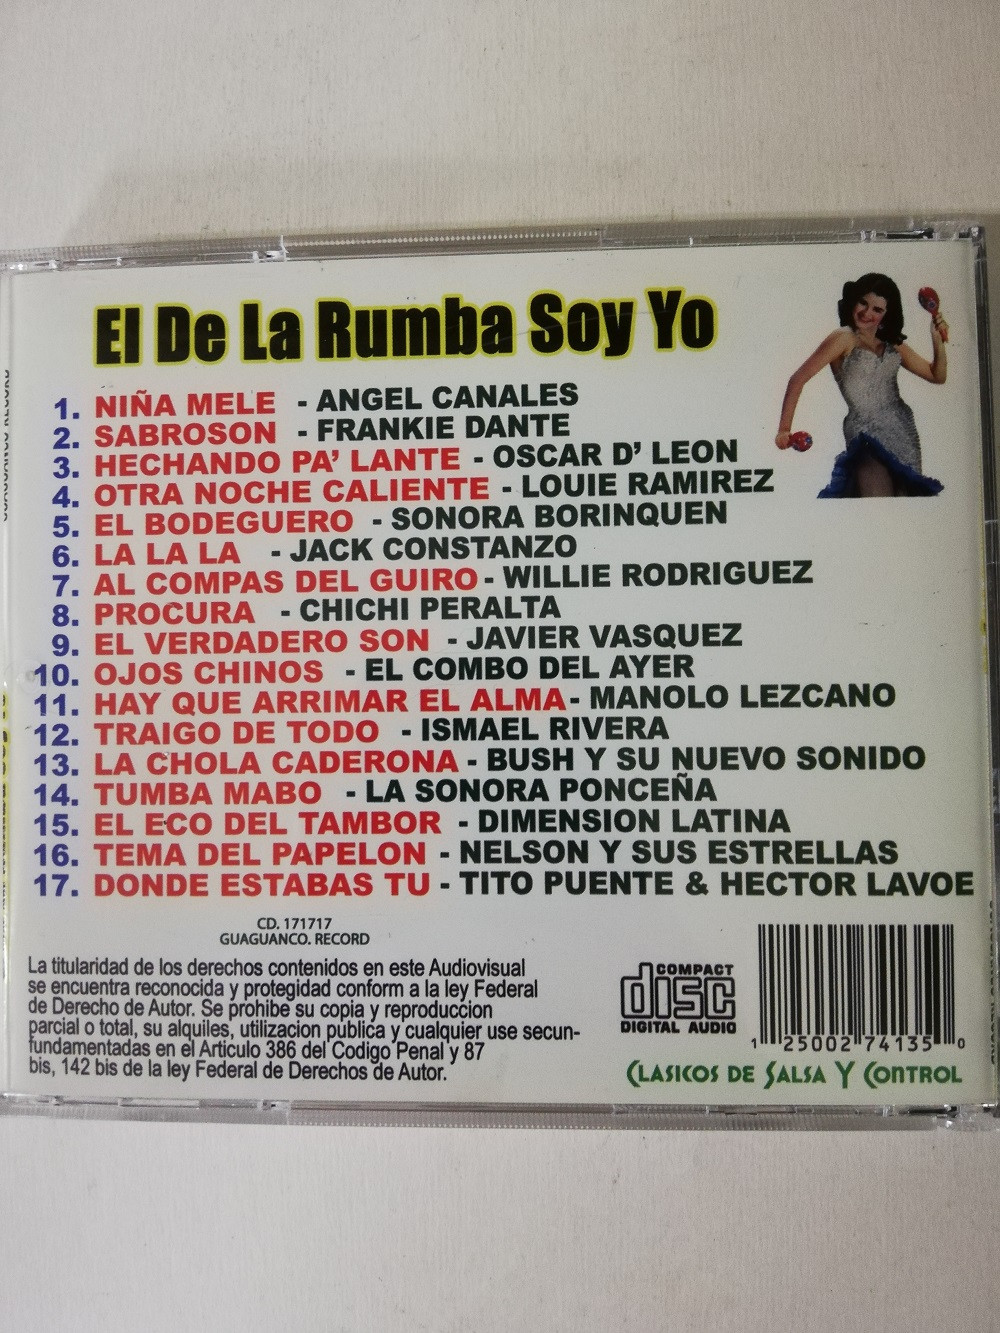 Imagen CD EL DE LA RUMBA SOY YO - CLÁSICOS DE SALSA Y CONTROL 2